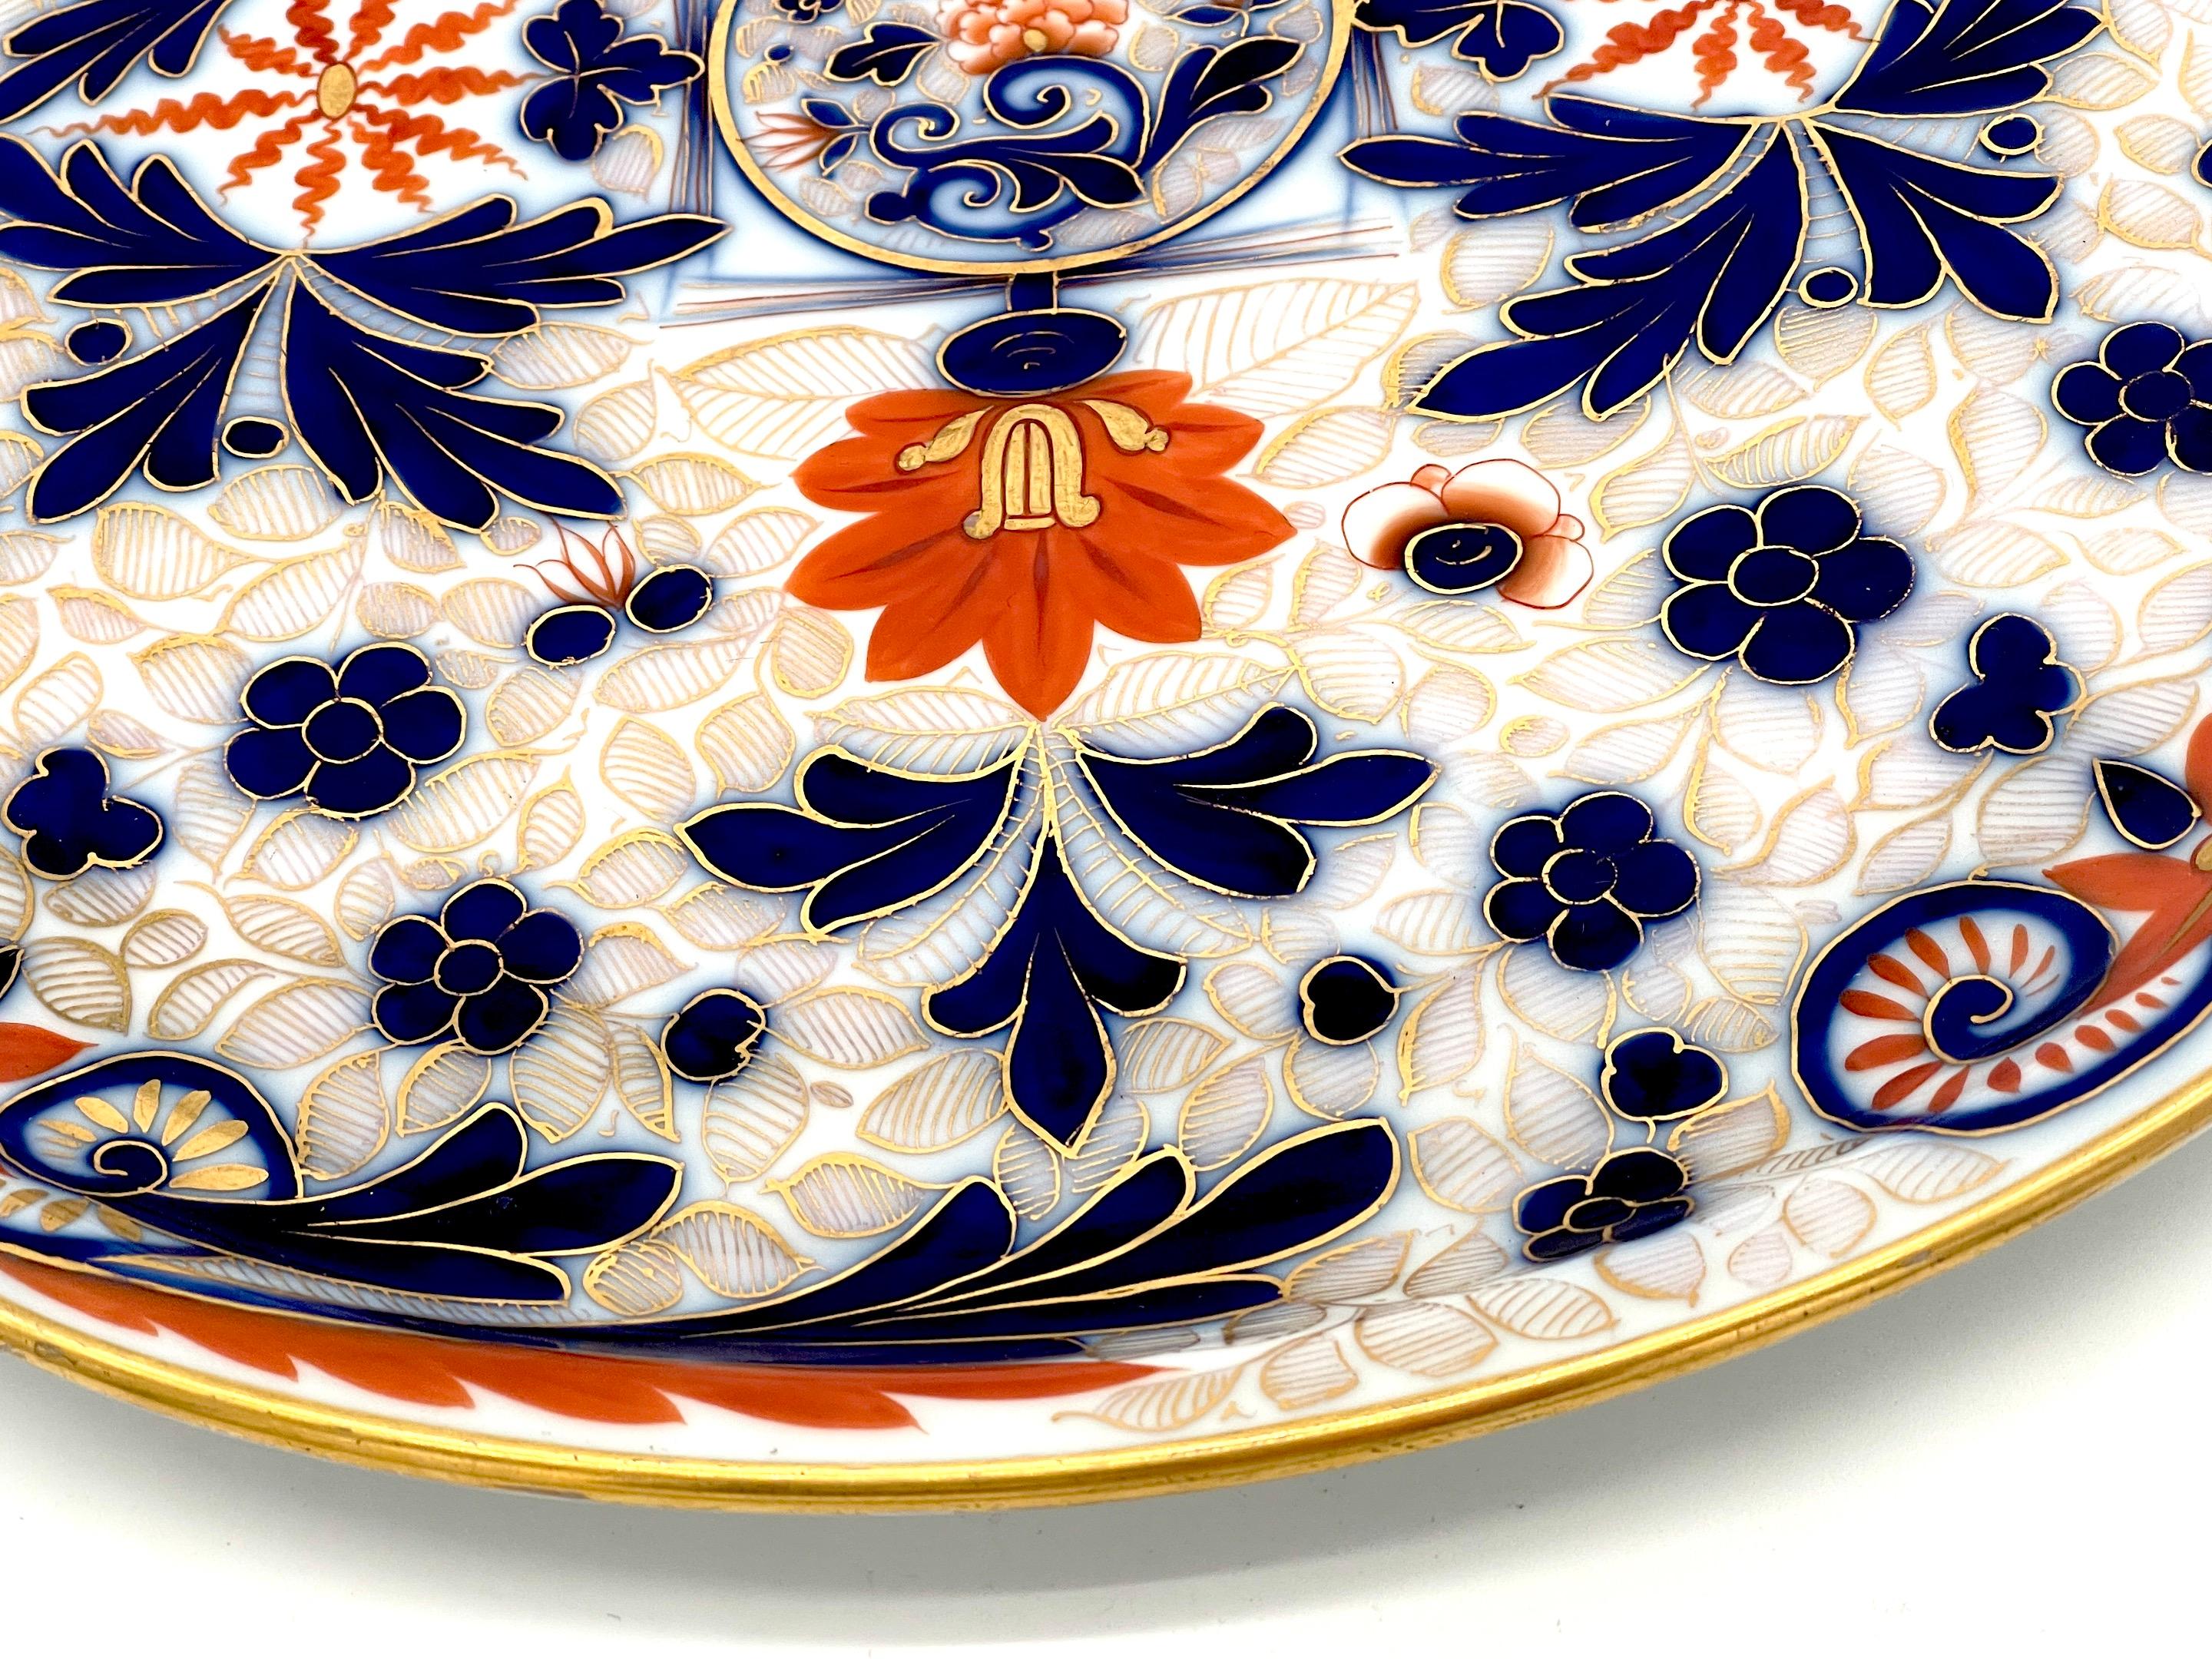 Fischer & Mieg Pirkenhammer Porcelain 'Imari' Pattern Round Handled Platter  In Good Condition For Sale In West Palm Beach, FL